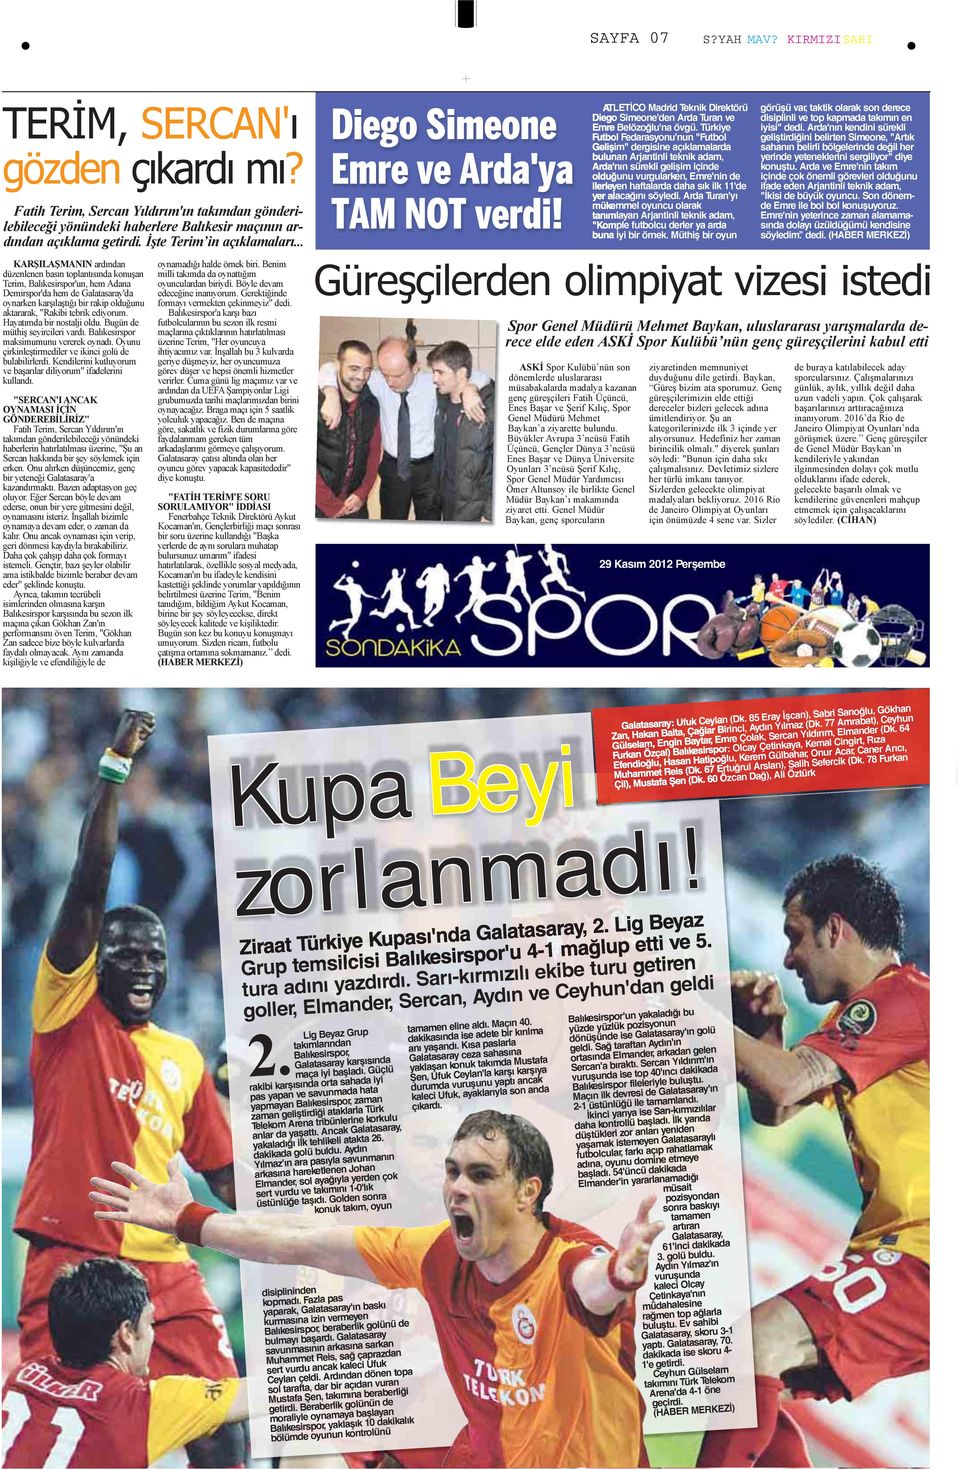 Türkiye Futbol Fedarasyonu'nun "Futbol Gelişim" dergisine açıklamalarda bulunan Arjantinli teknik adam, Arda'nın sürekli gelişim içinde olduğunu vurgularken, Emre'nin de ilerleyen haftalarda daha sık